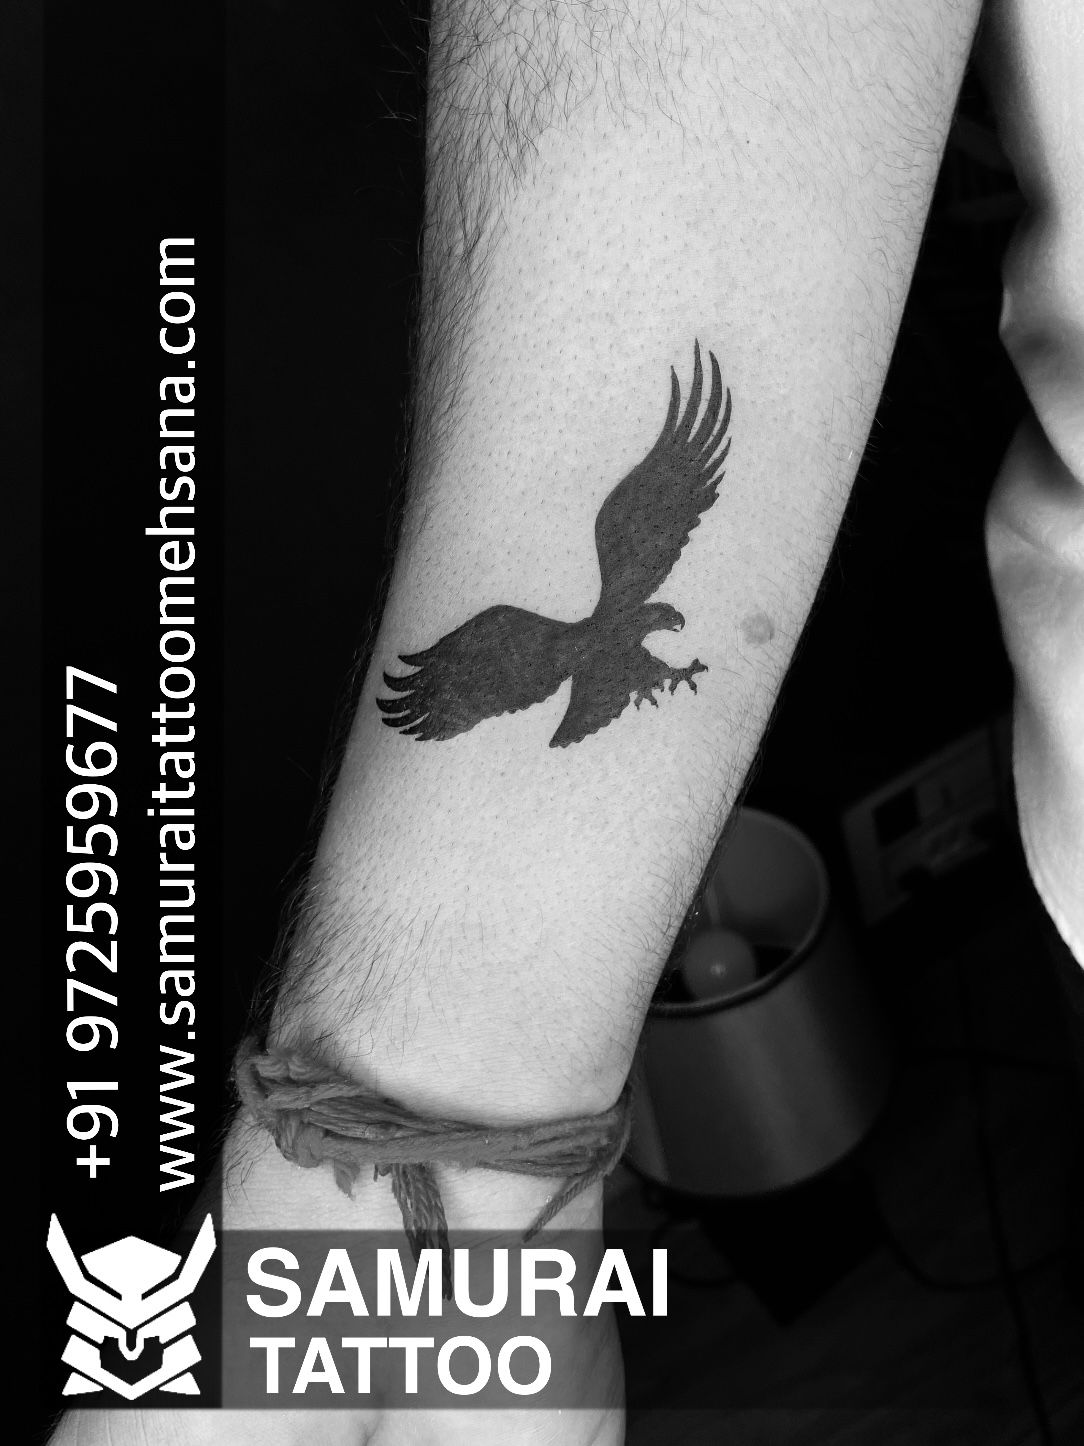 Top 5 Eagle Tattoo Designs Idea for Hand